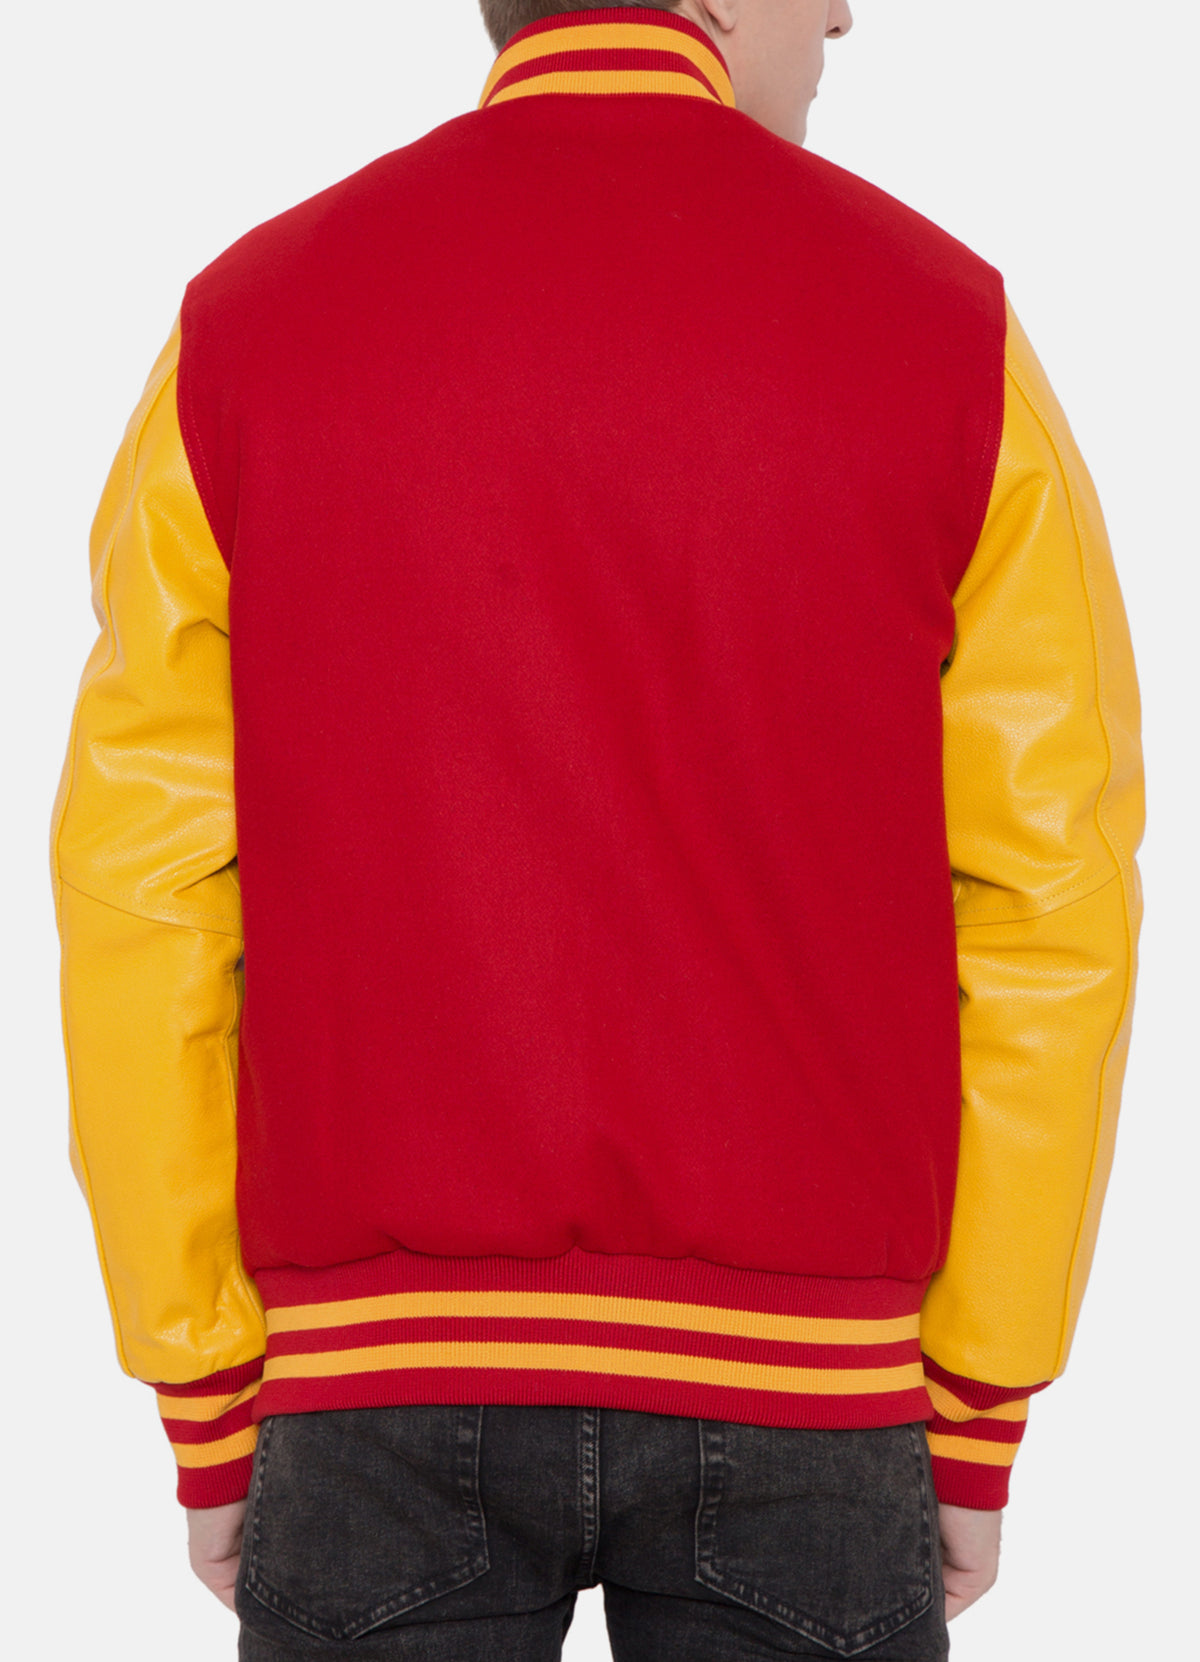 Mens Iconic Red and Yellow Varsity Jacket | Elite Jacket